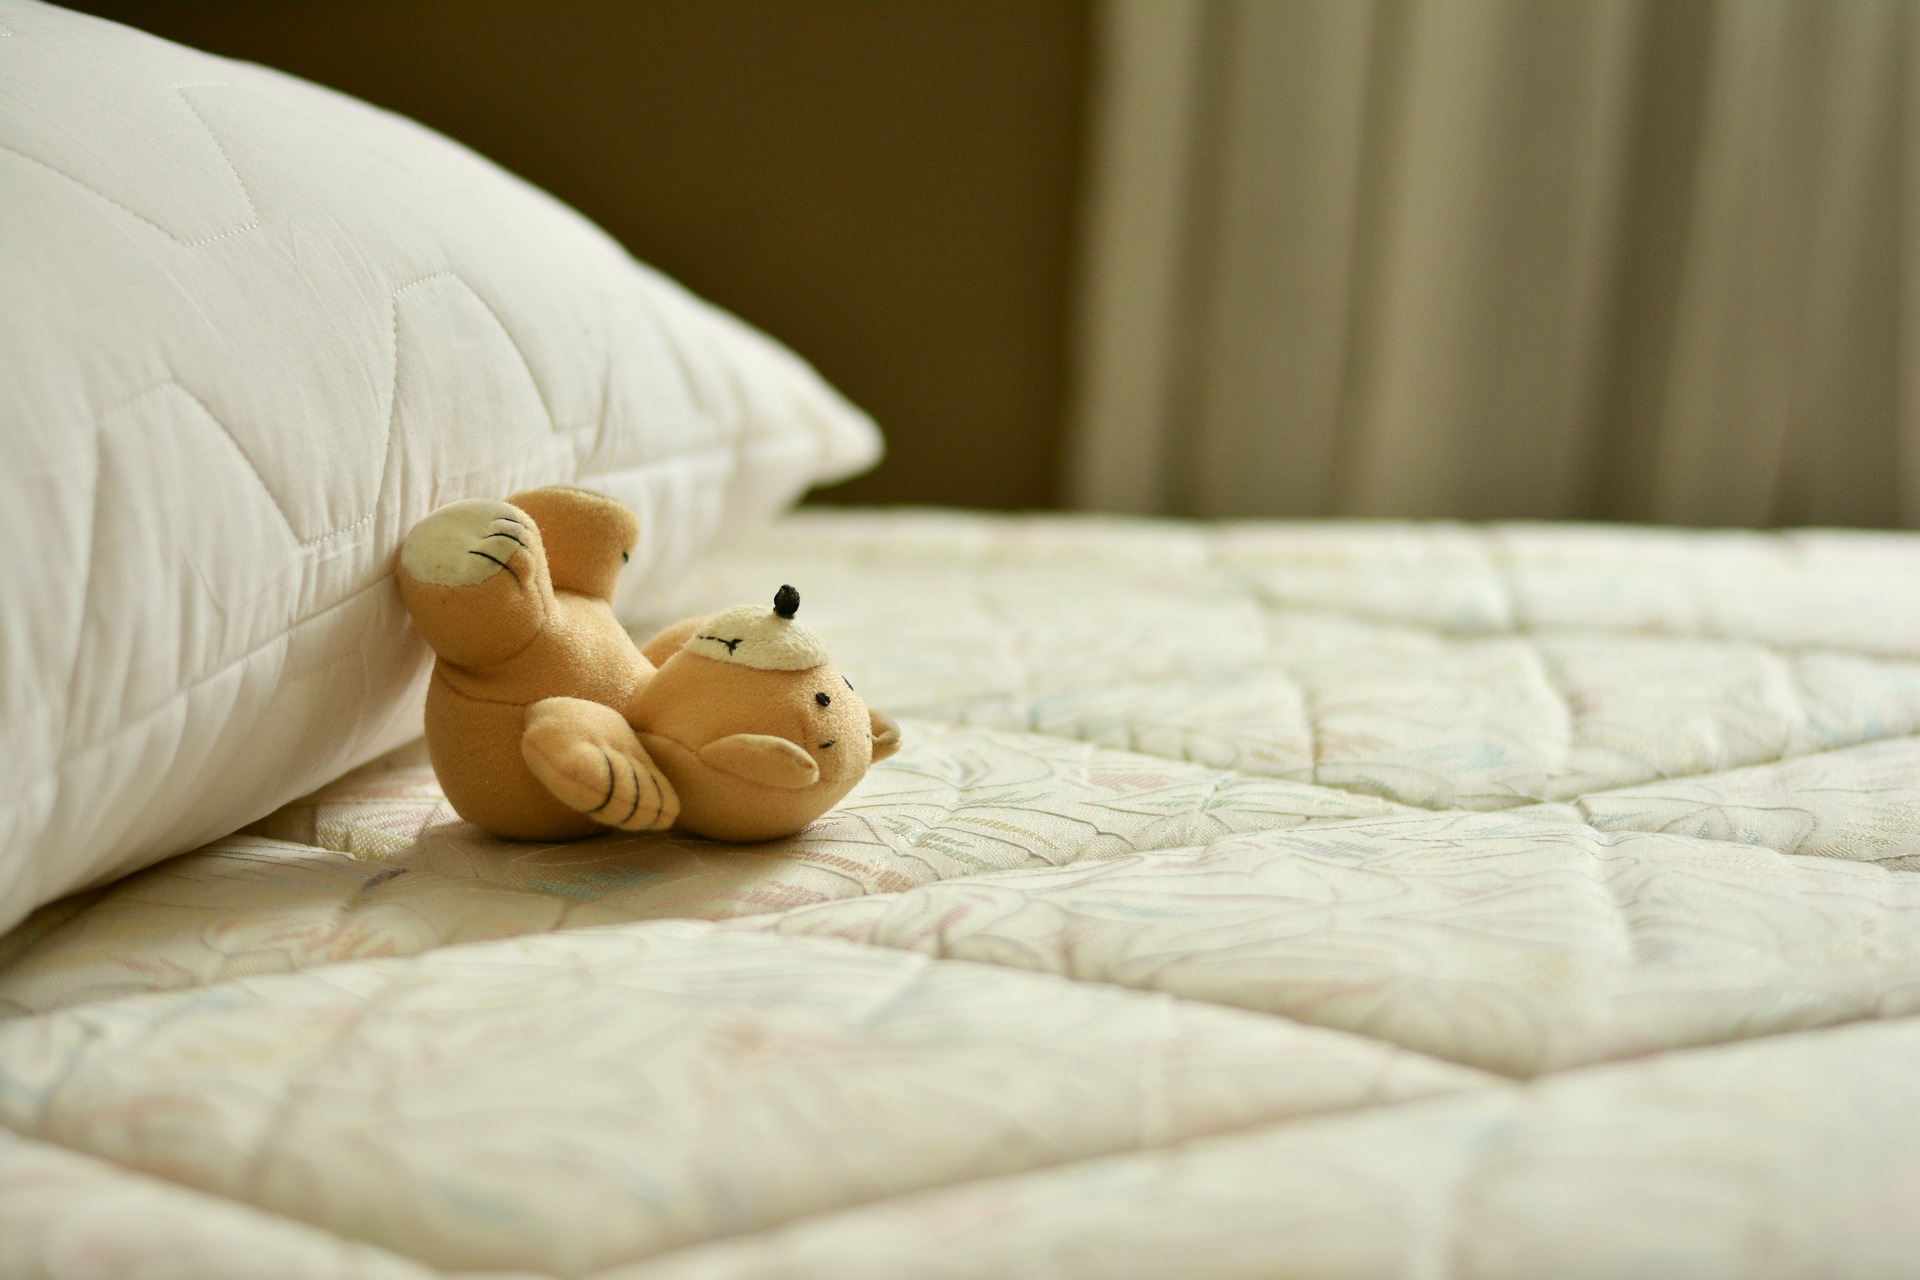 teddy bear on a bed